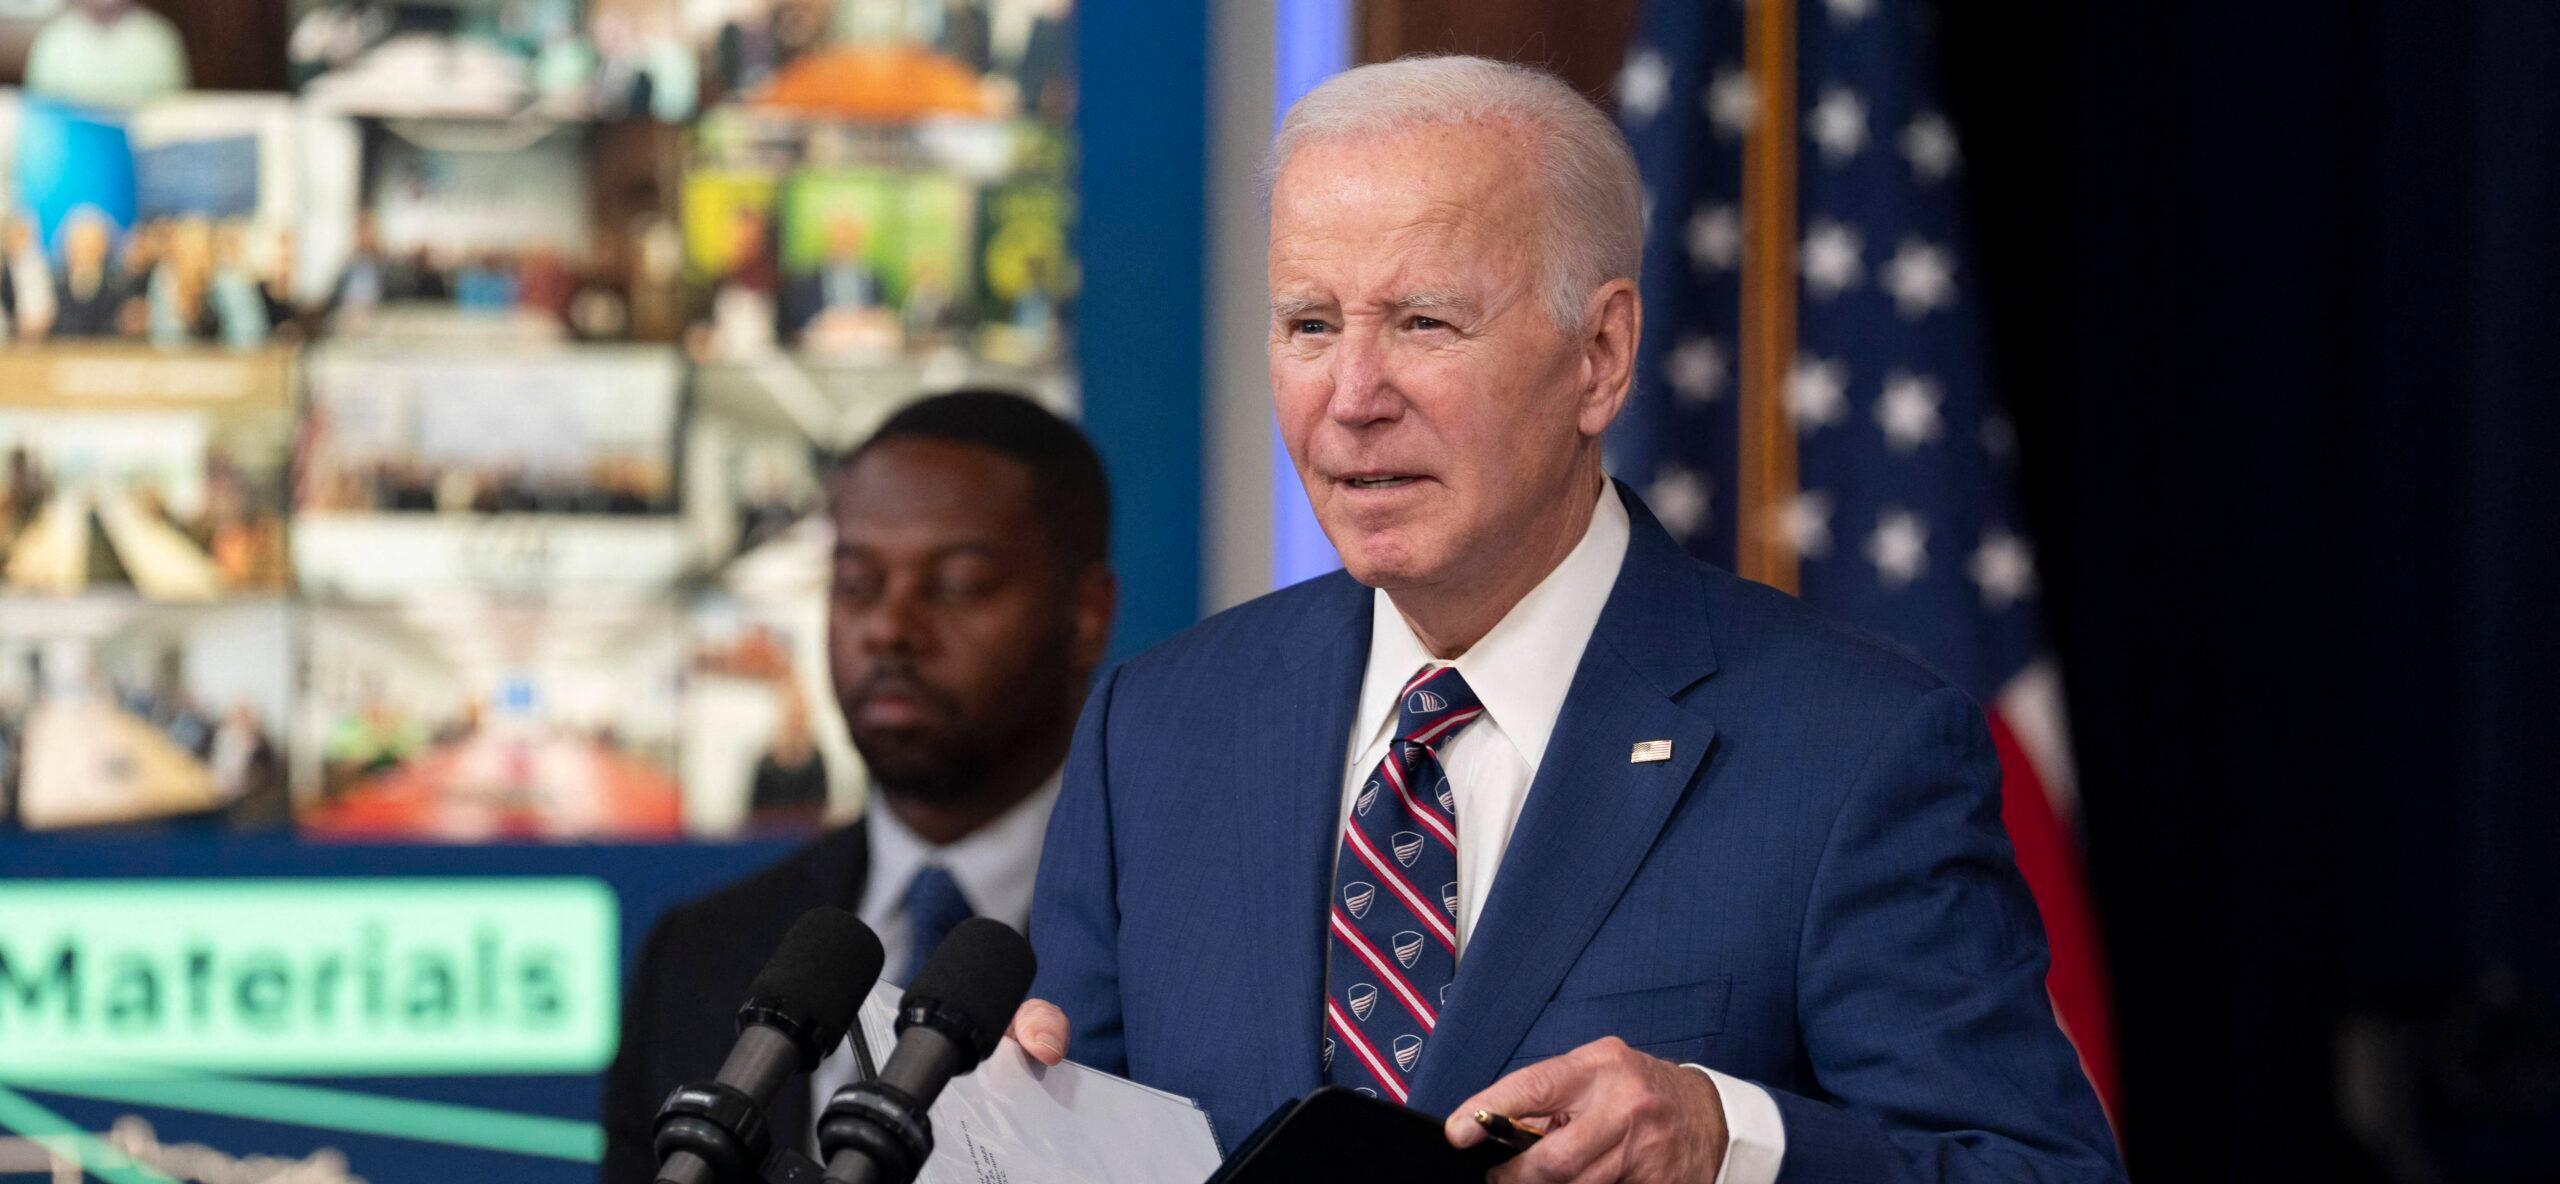 President Joe Biden Suddenly Stops Speech Due To An Urgent Military ‘Issue’